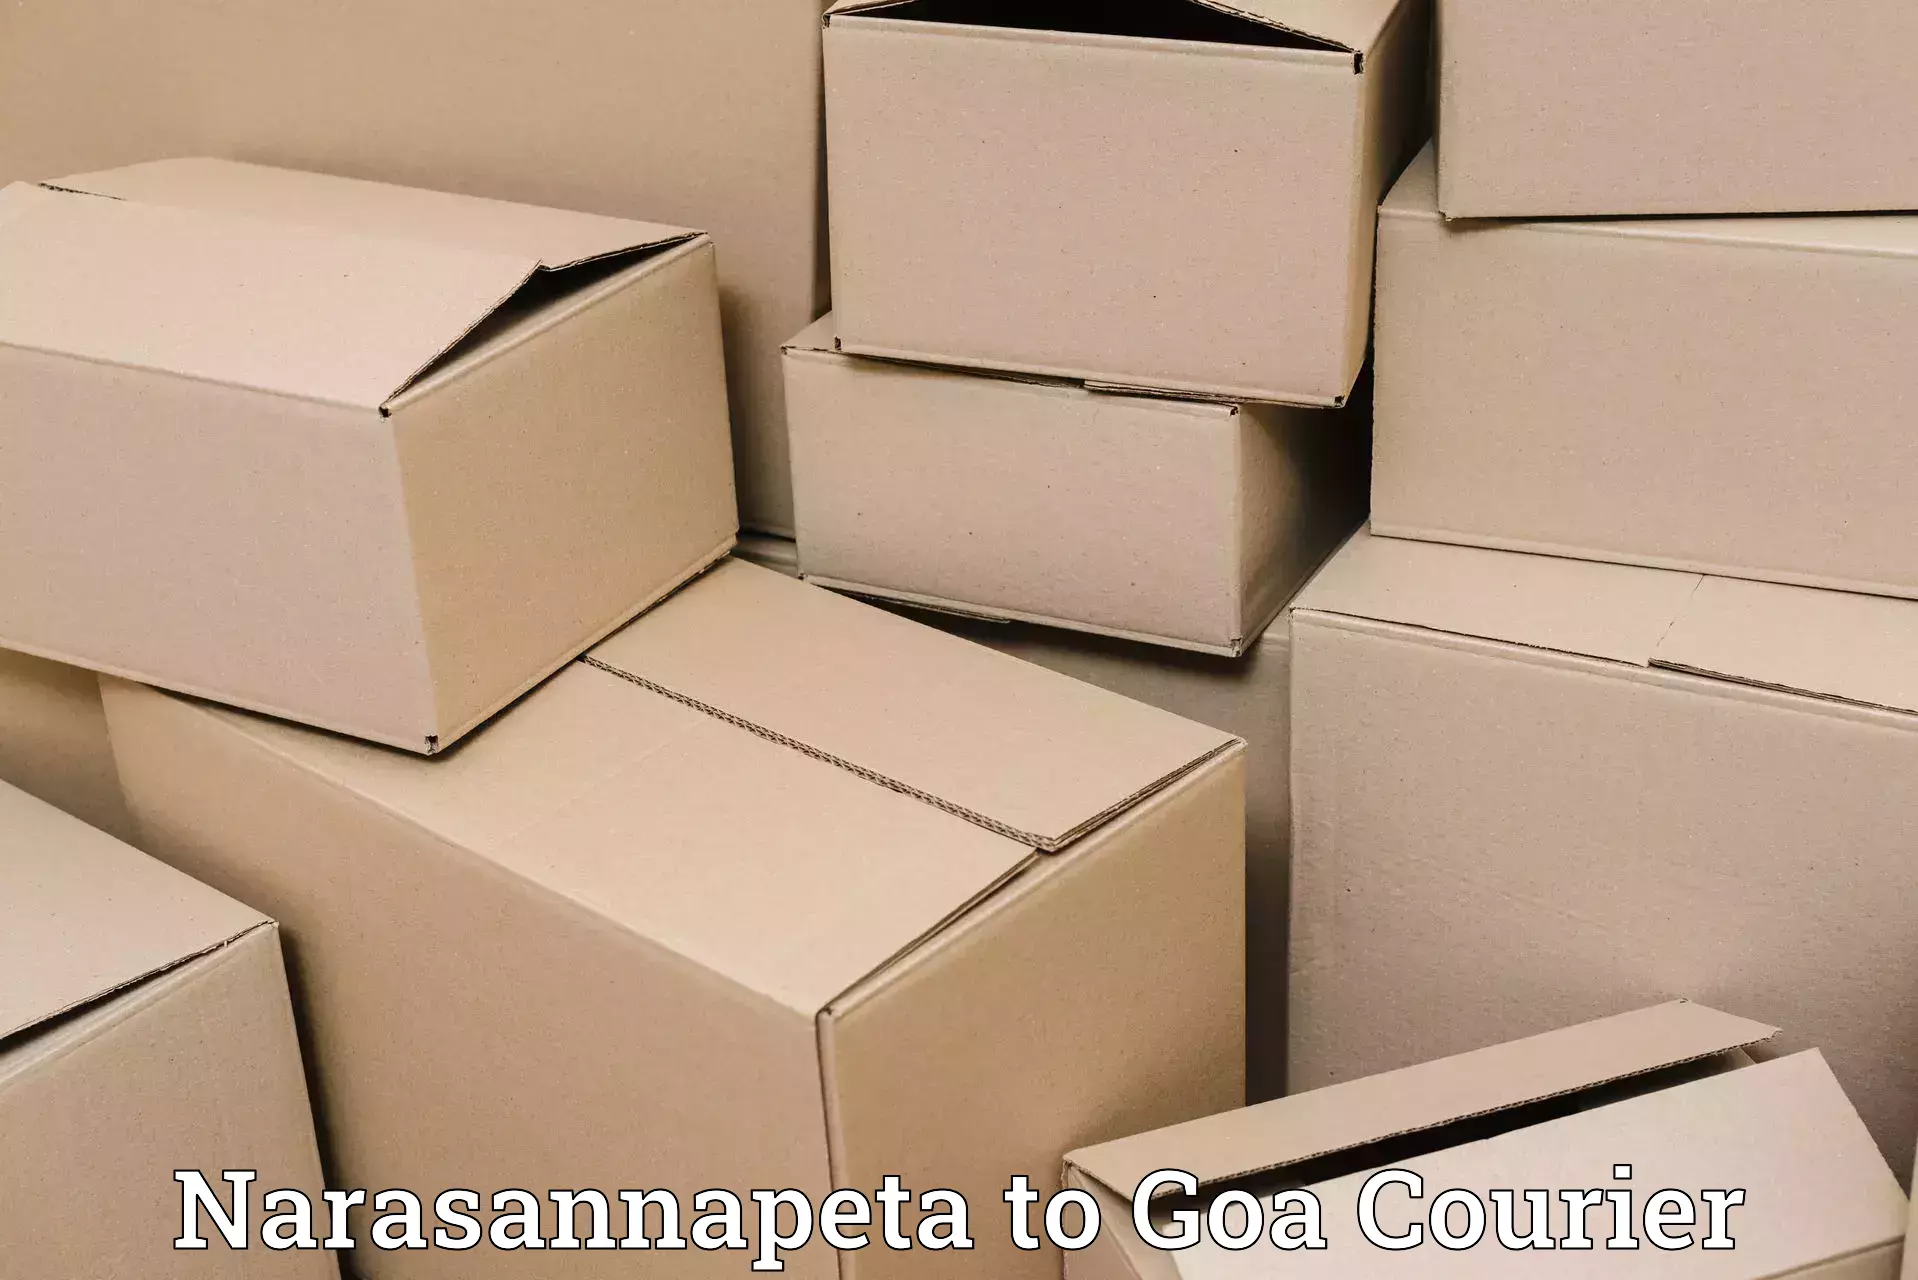 End-to-end delivery Narasannapeta to Sanvordem